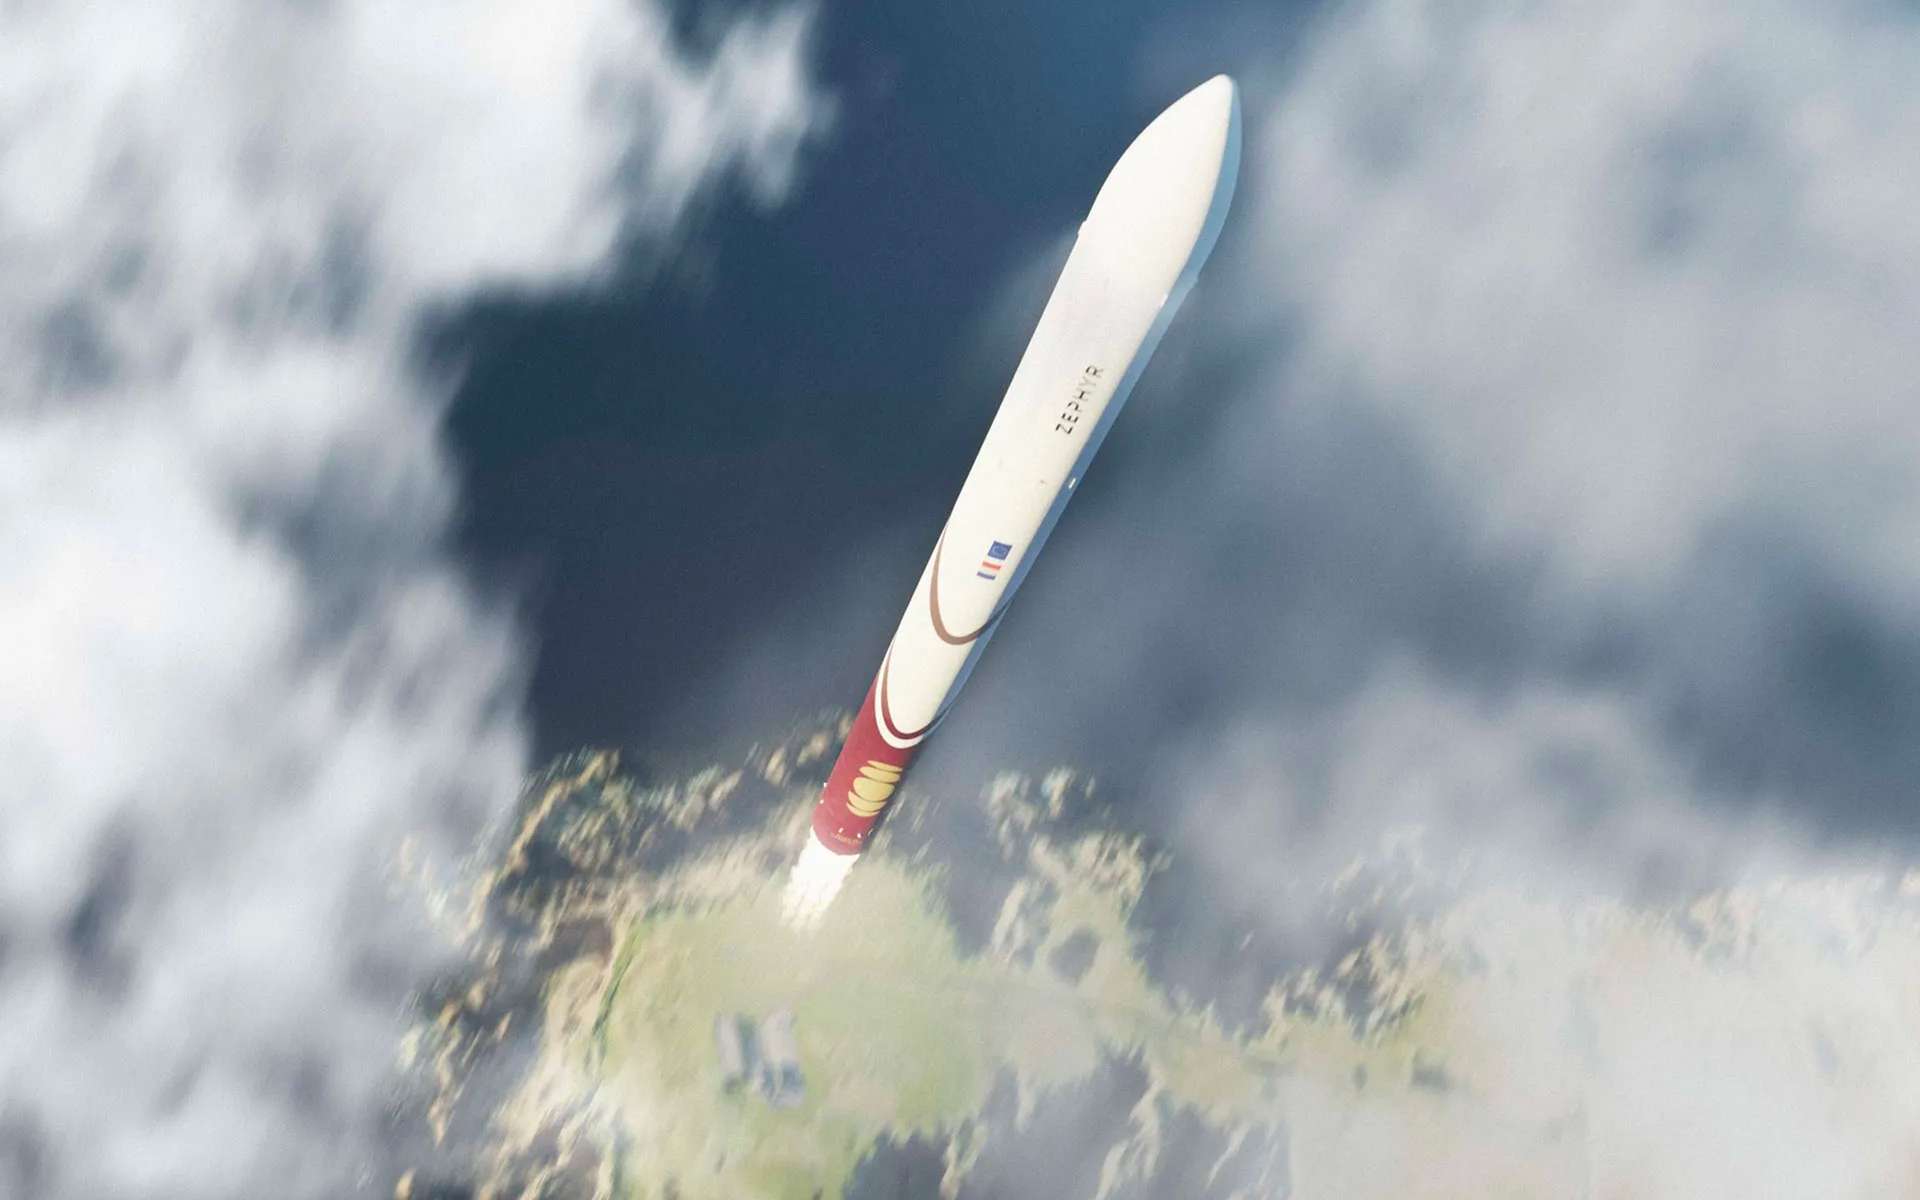 Le petit lanceur français Zéphyr vise un rythme de 50 satellites par an